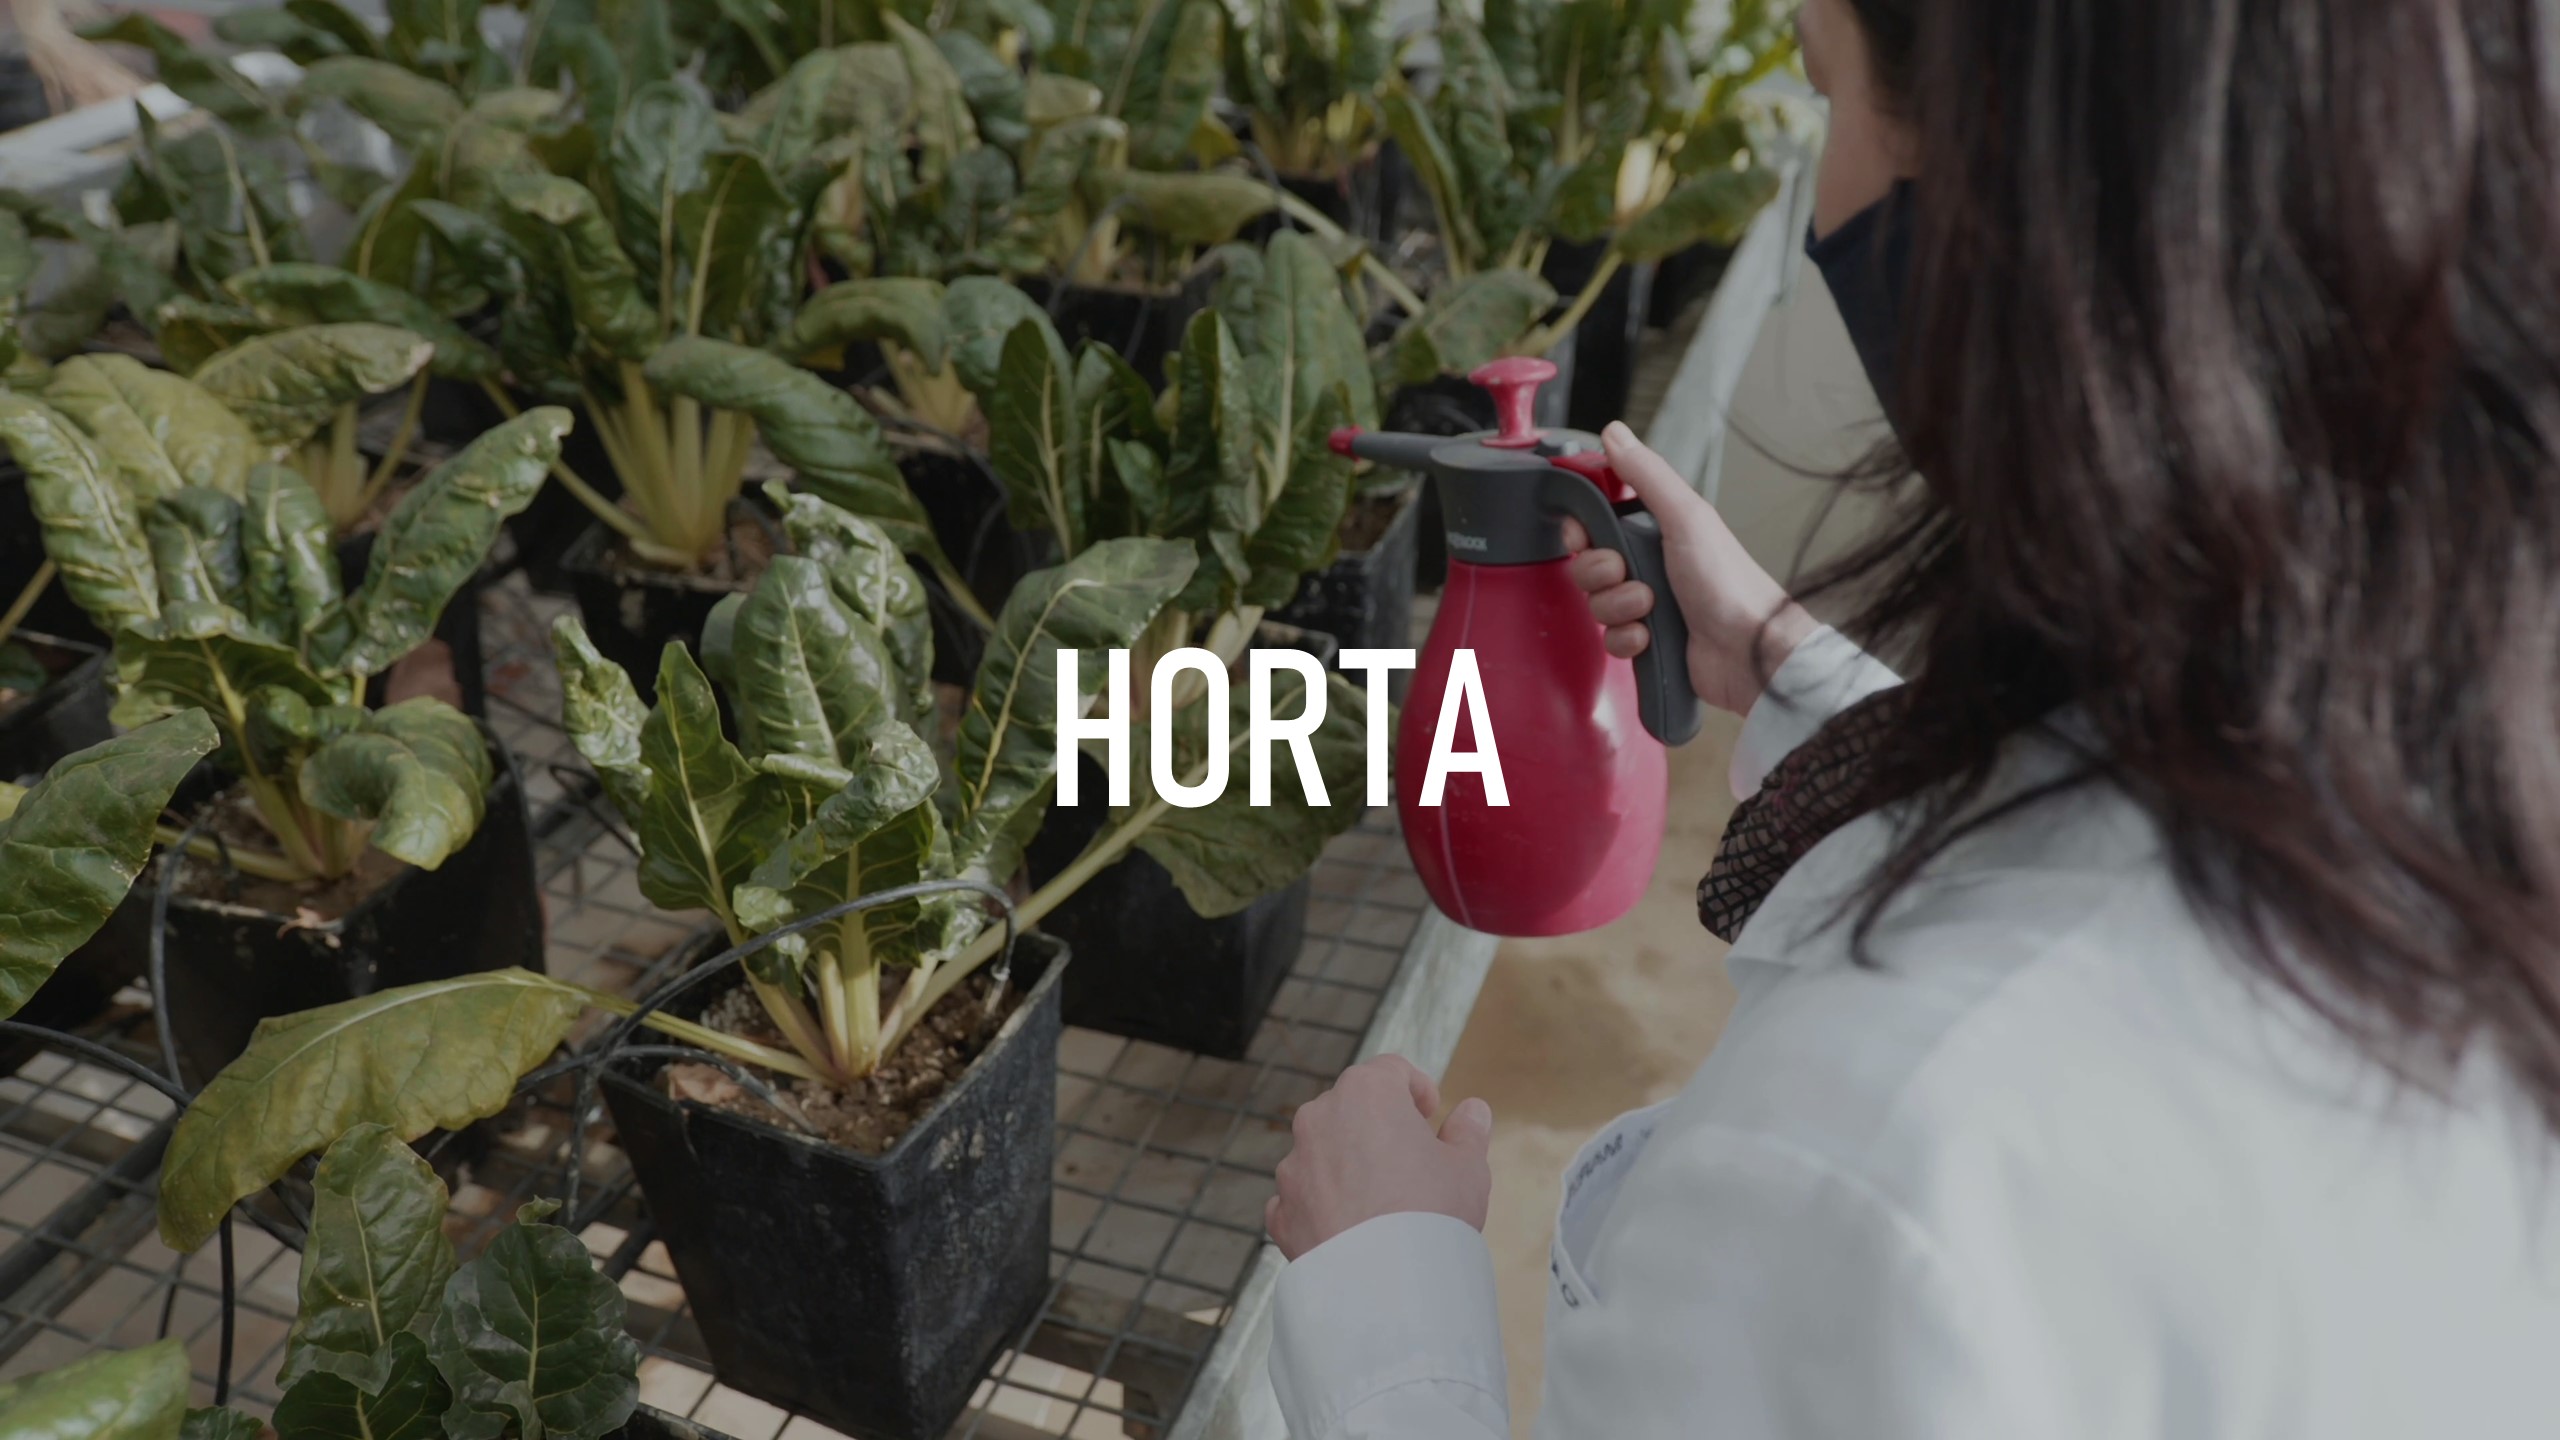 Imagen descriptiva del proyecto colaborativo Horta. Cultivos con mayor concentración de nitratos